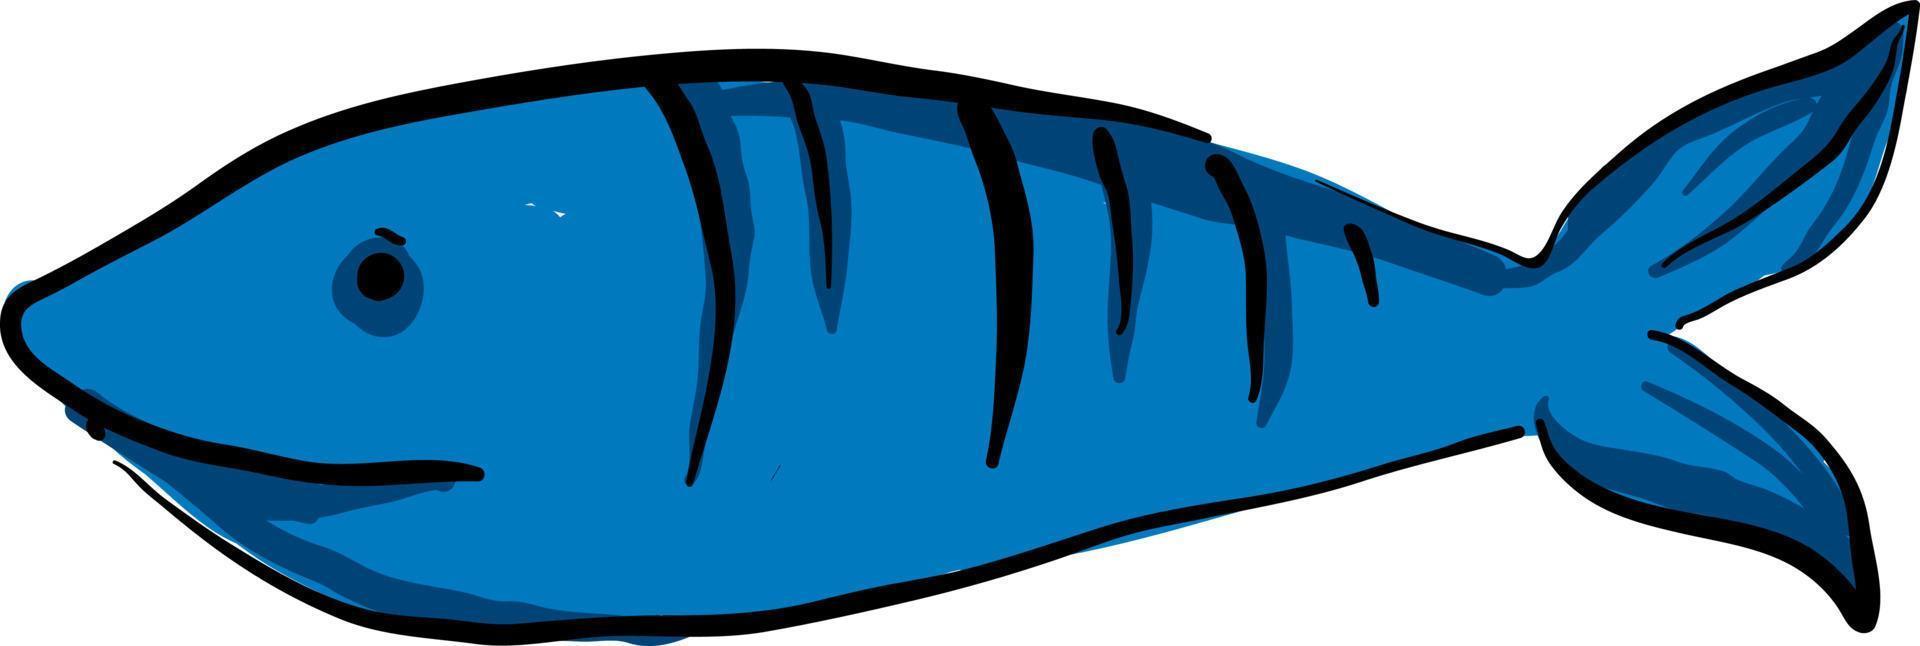 blu pesce, illustrazione, vettore su bianca sfondo.